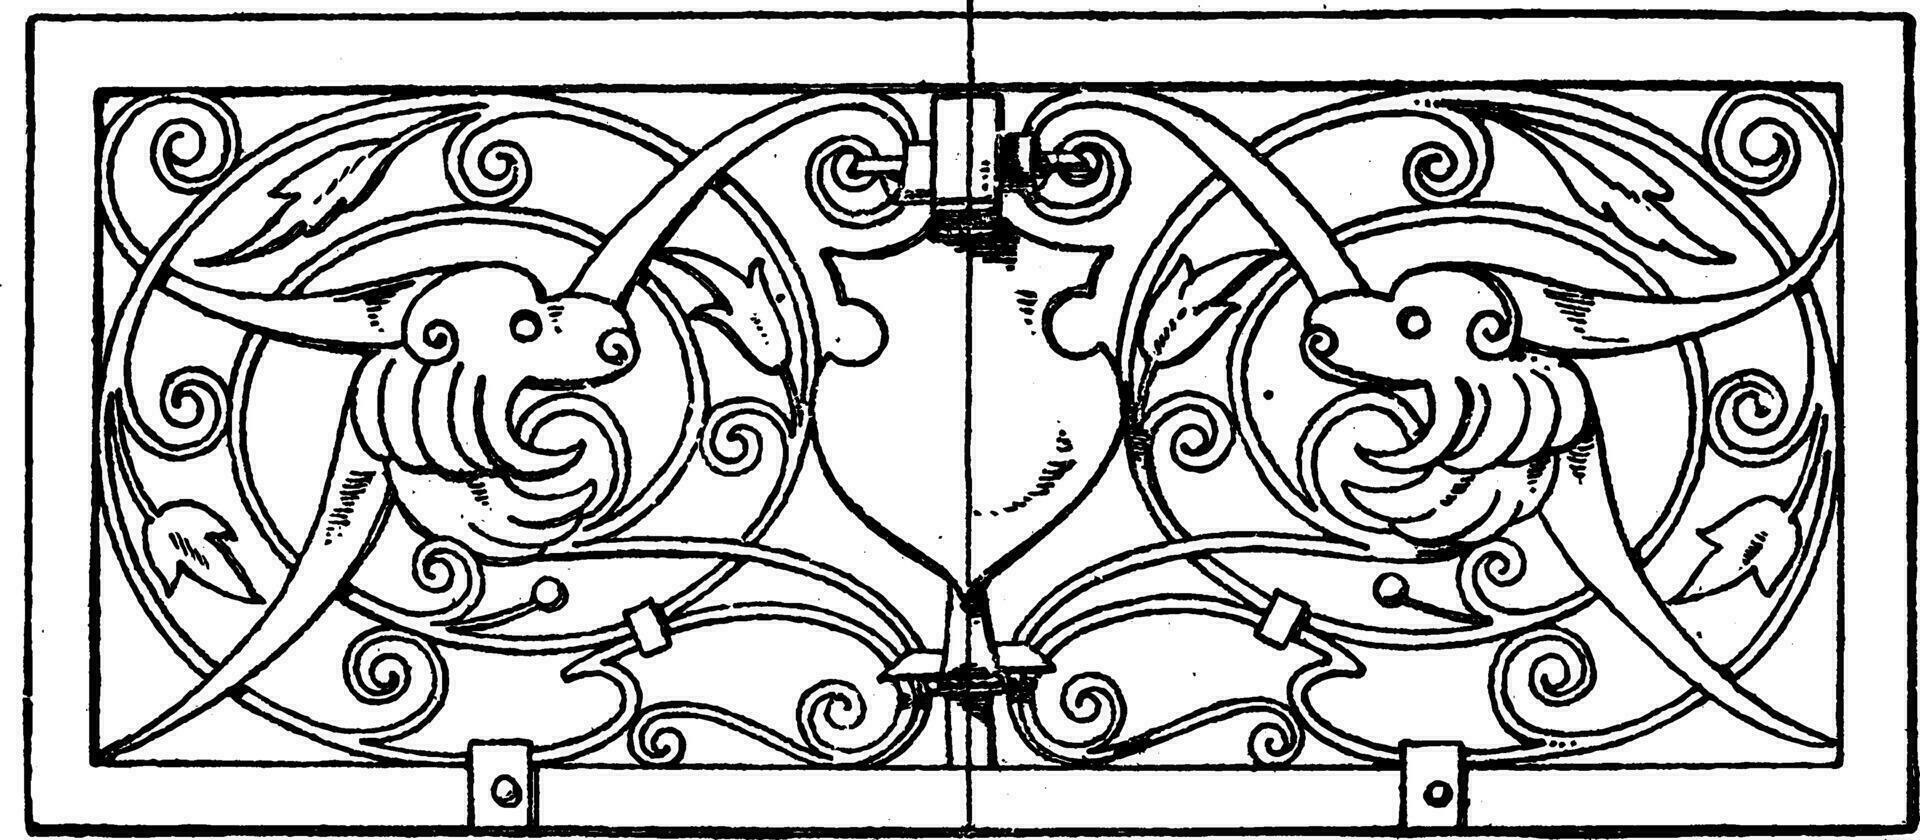 parrilla oblongo panel estaba diseñado en 1649, Clásico grabado. vector